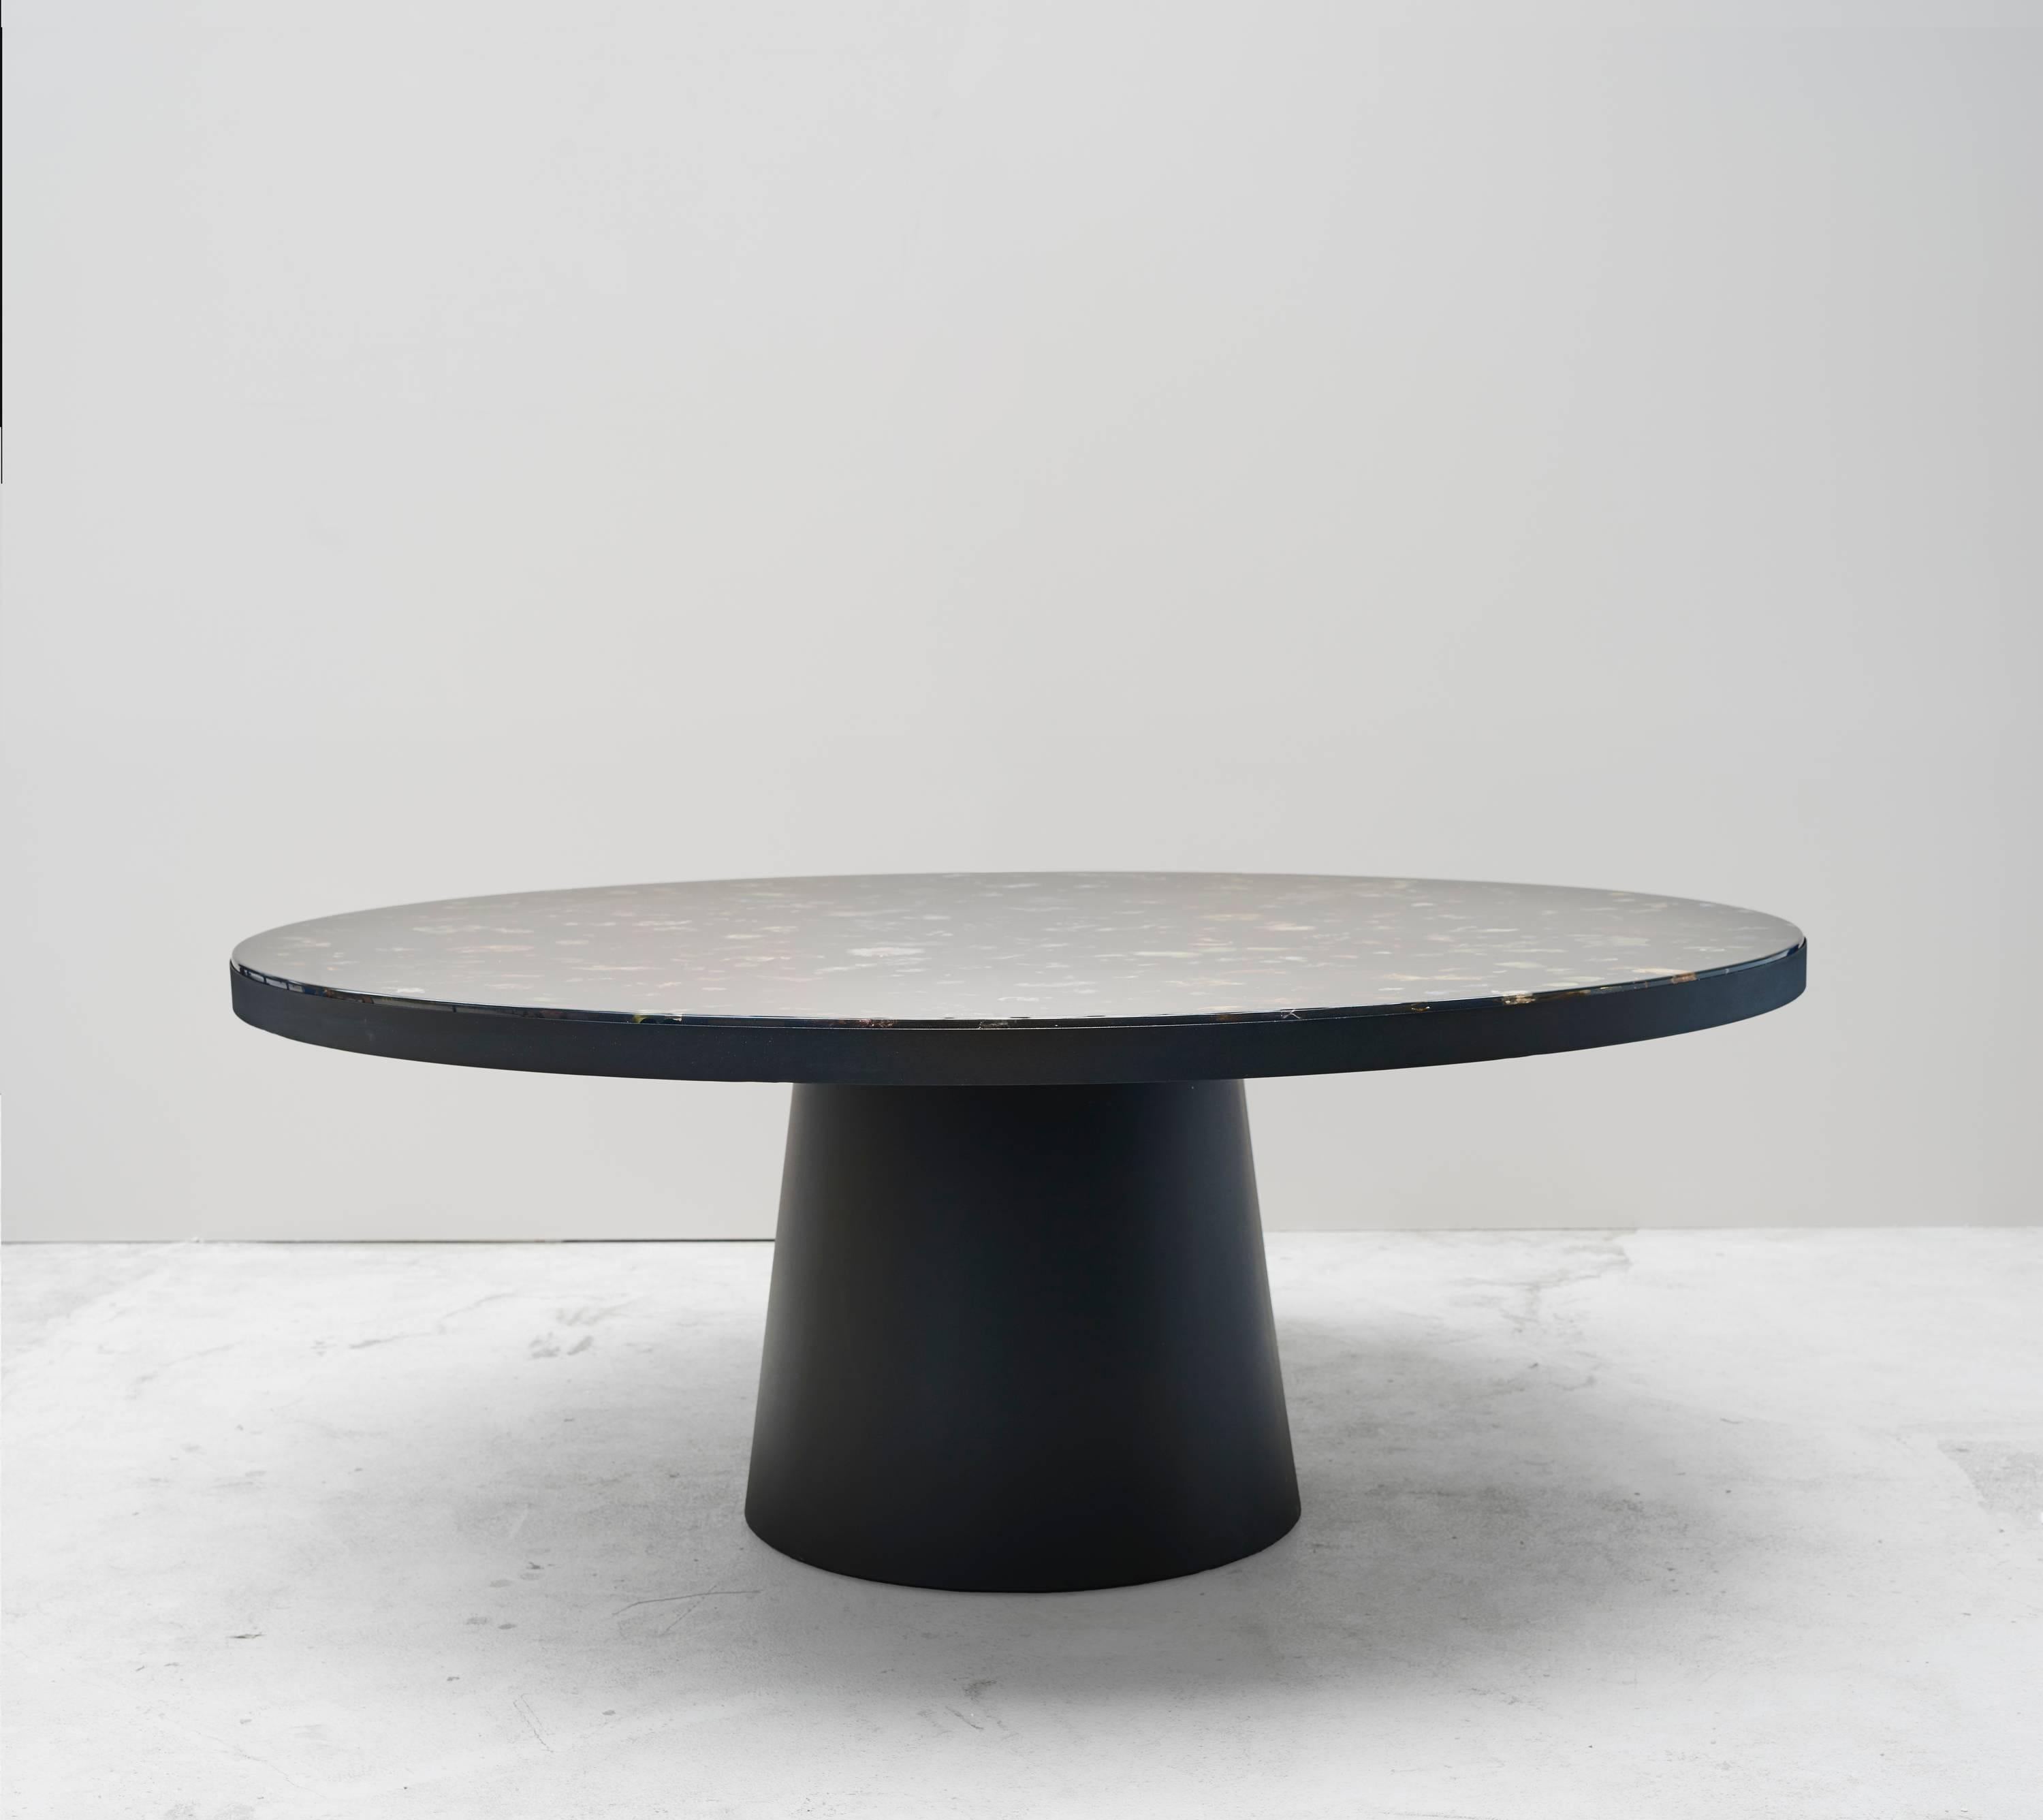 Table, 2017

Steel, flowers, black resin

Unique piece

Measures: H 29.9 x D 74.8

(76 x 190 cm).